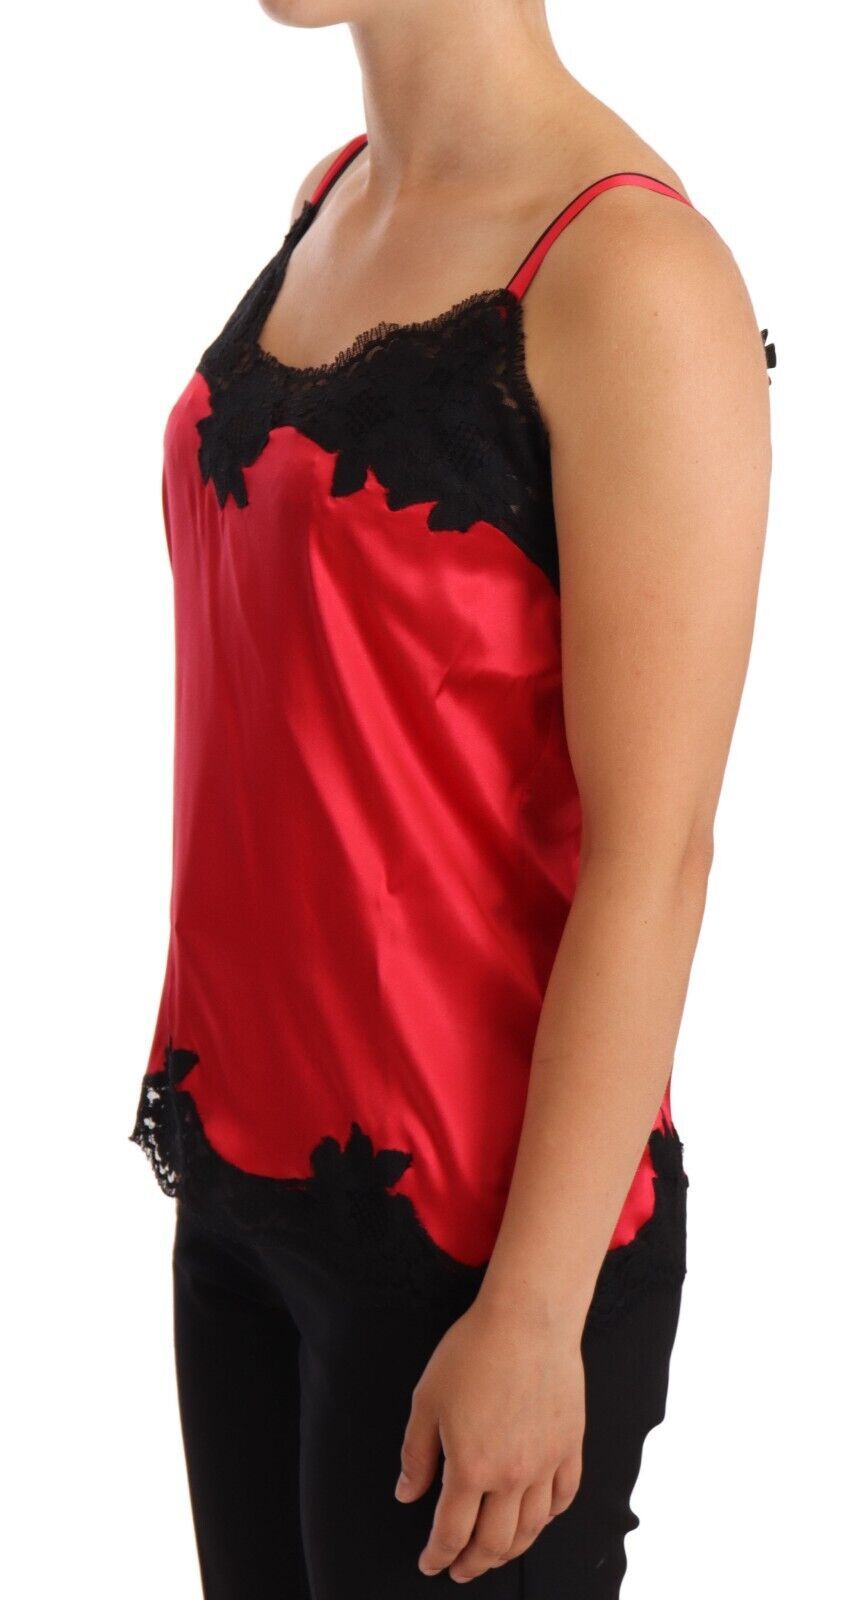 Silk Blend Lace-Trim Camisole in Red & Black